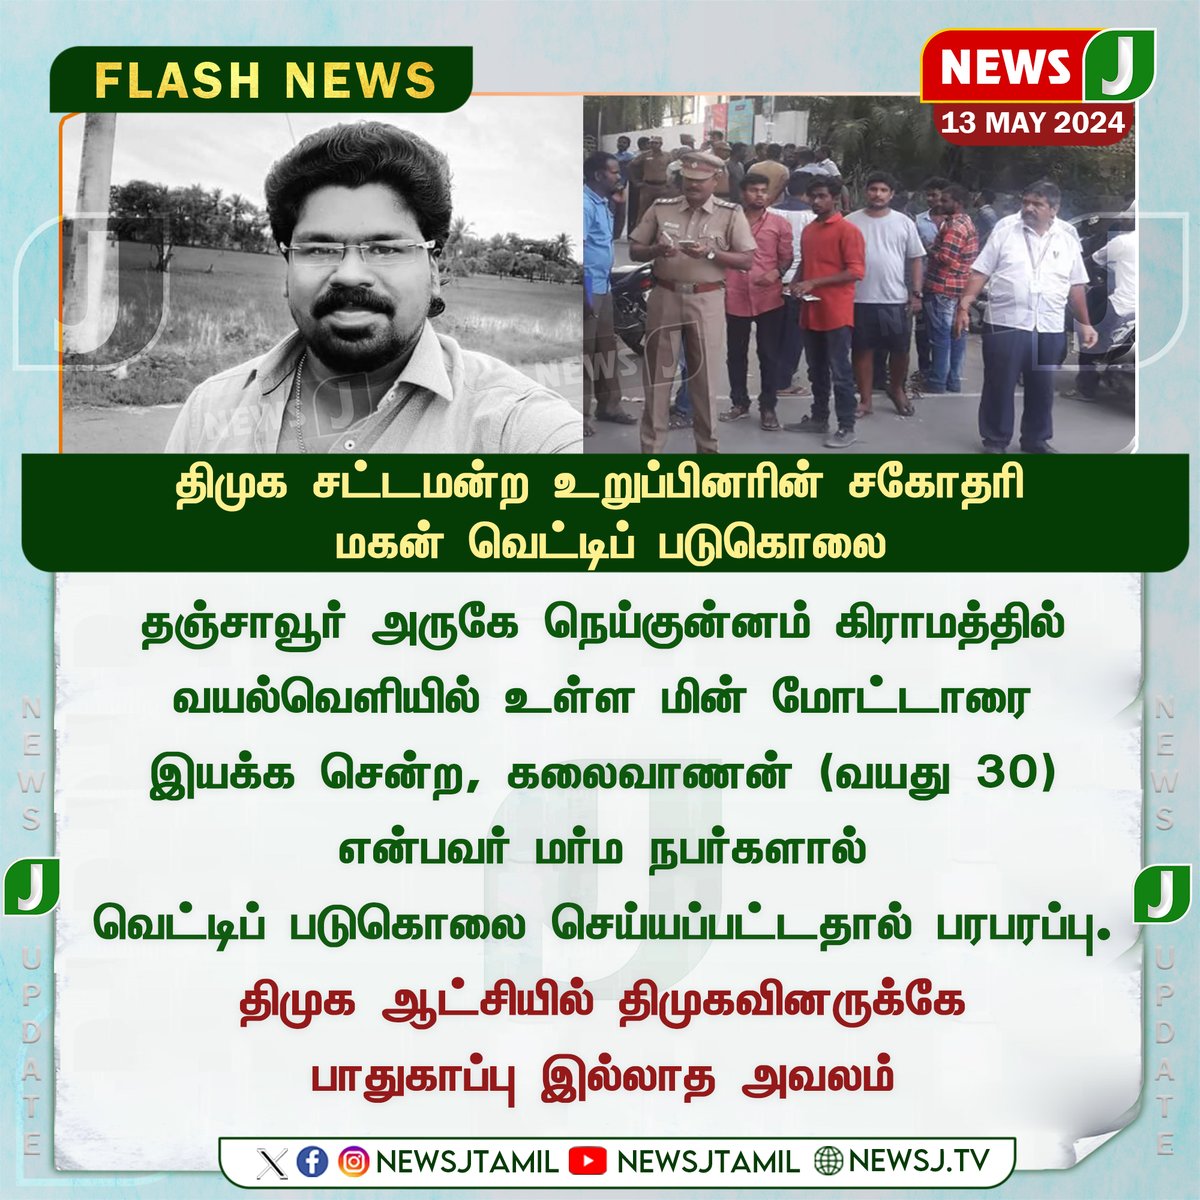 | திமுக சட்டமன்ற உறுப்பினரின் சகோதரி மகன் வெட்டிப் படுகொலை... #Thanjavur #dmkgovt #DMKFails #CrimeNews #newsj